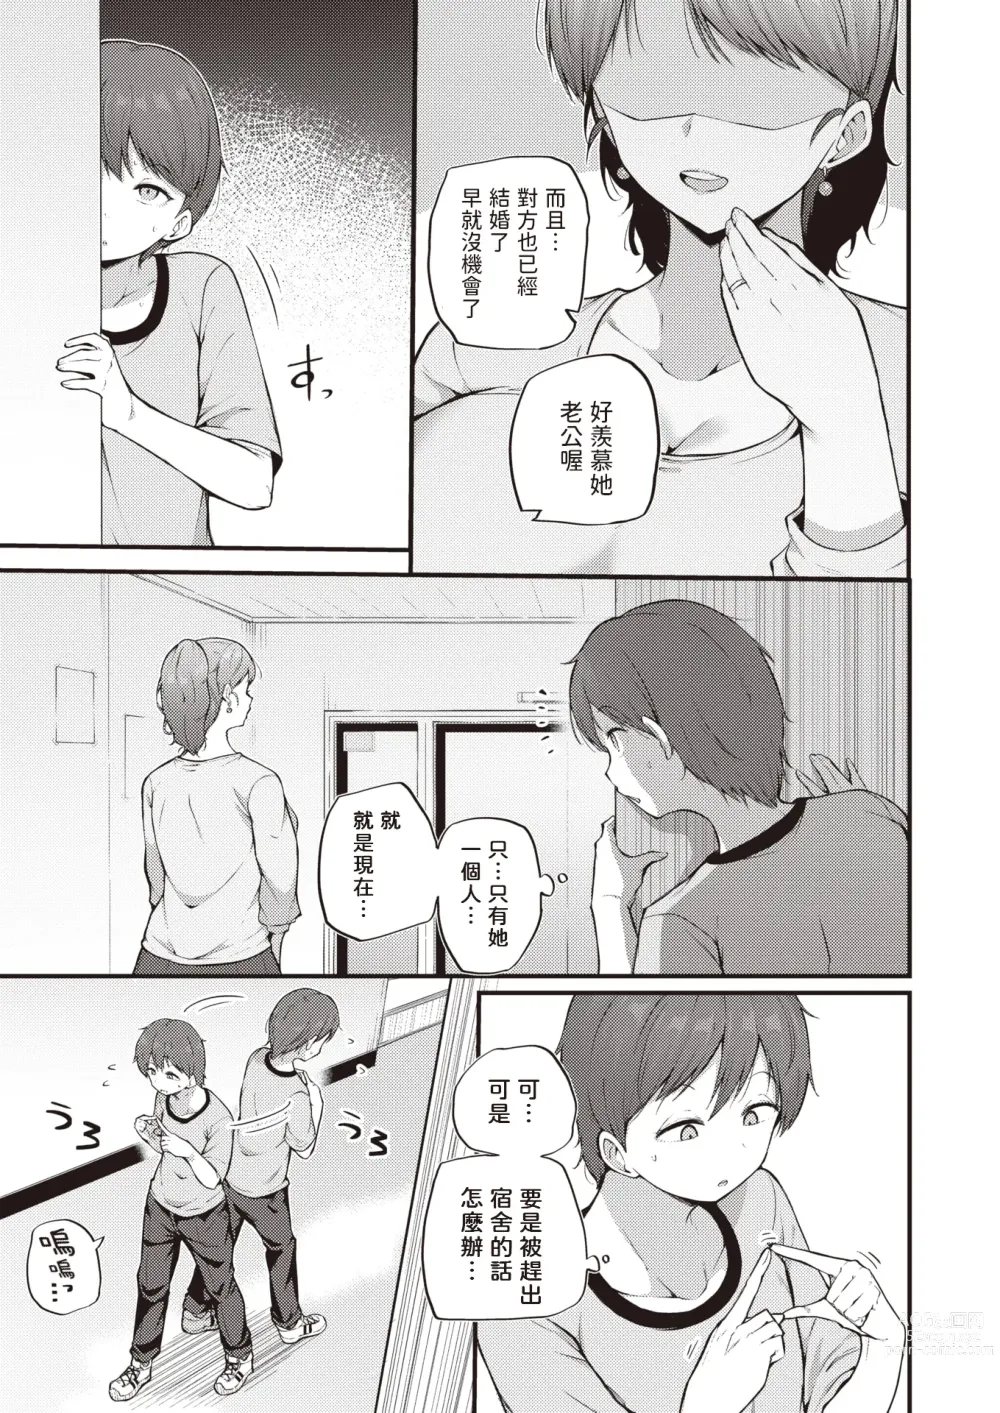 Page 3 of manga Himegoto